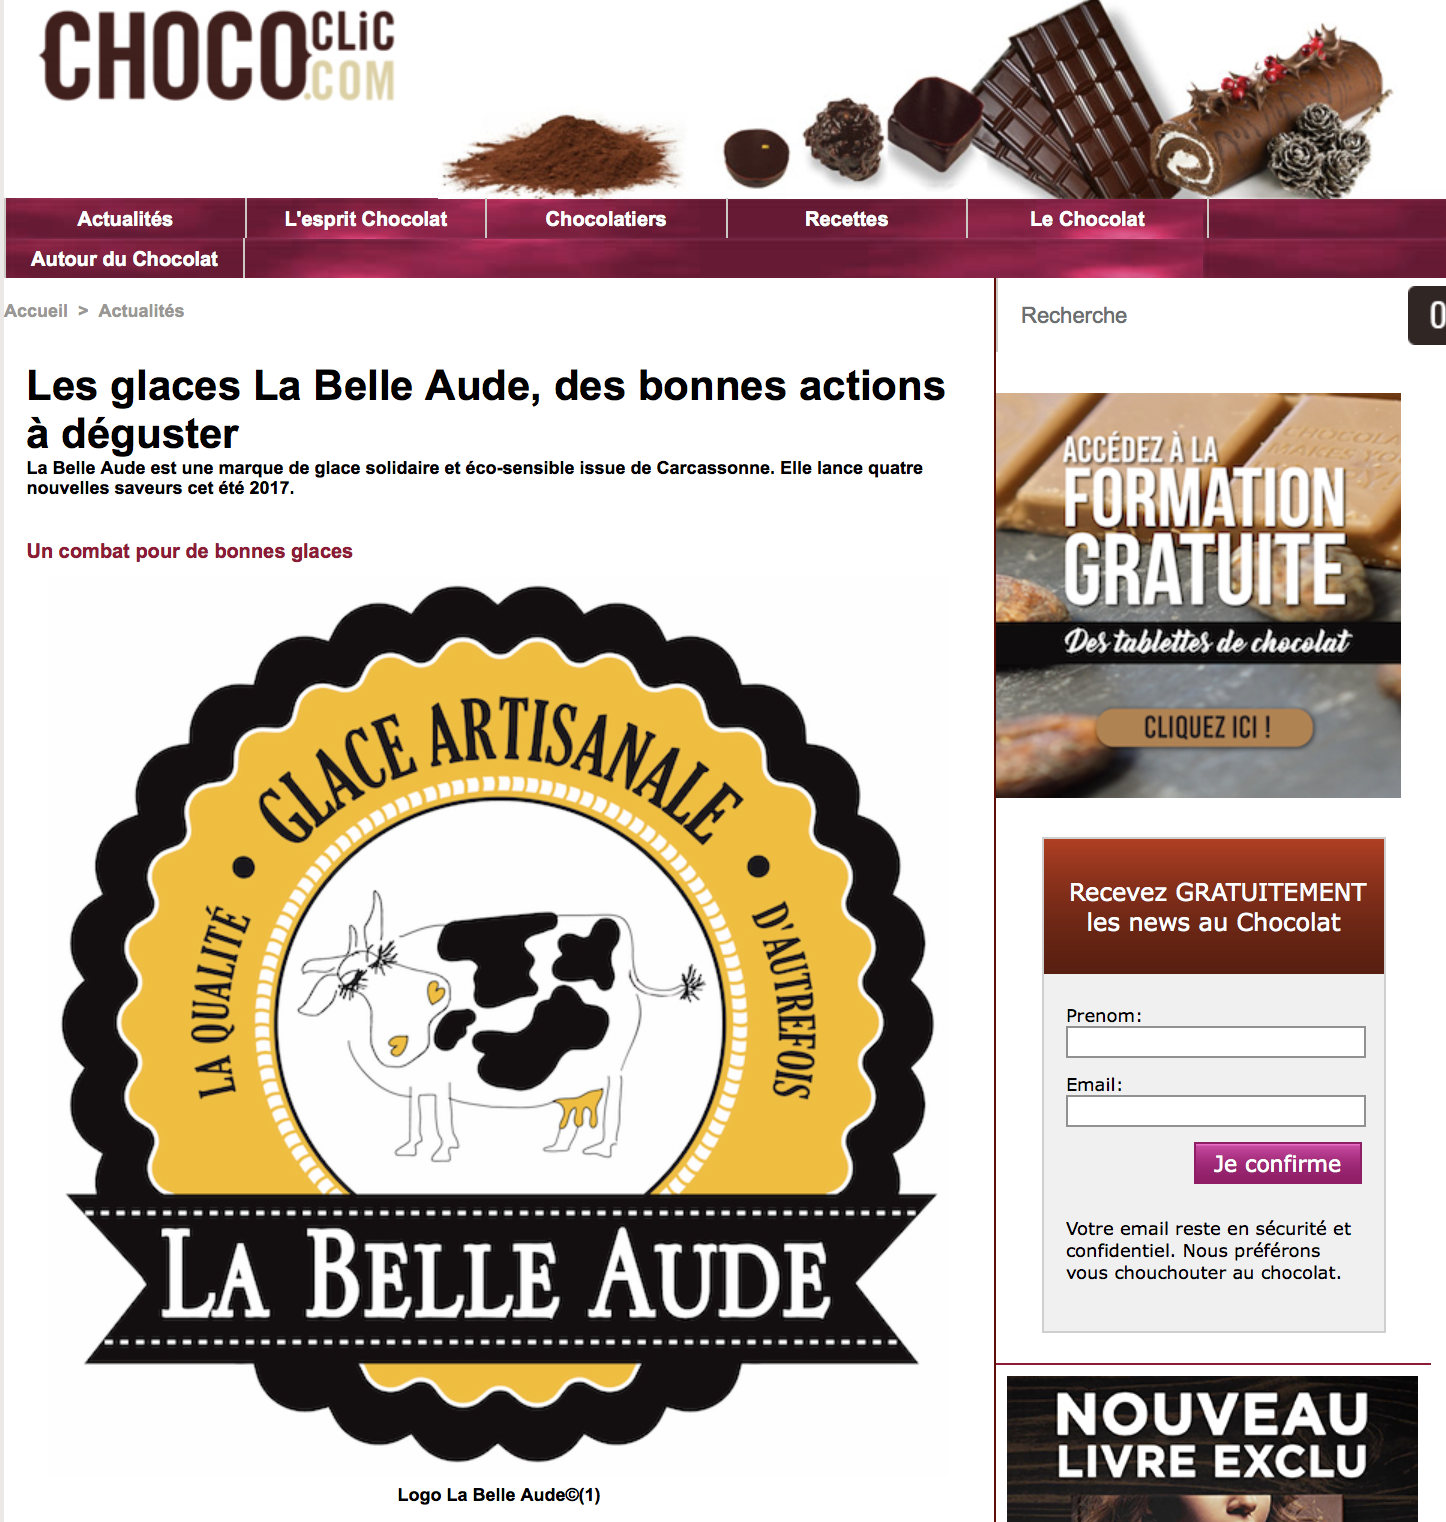 Chococlic.com parle de La Belle Aude